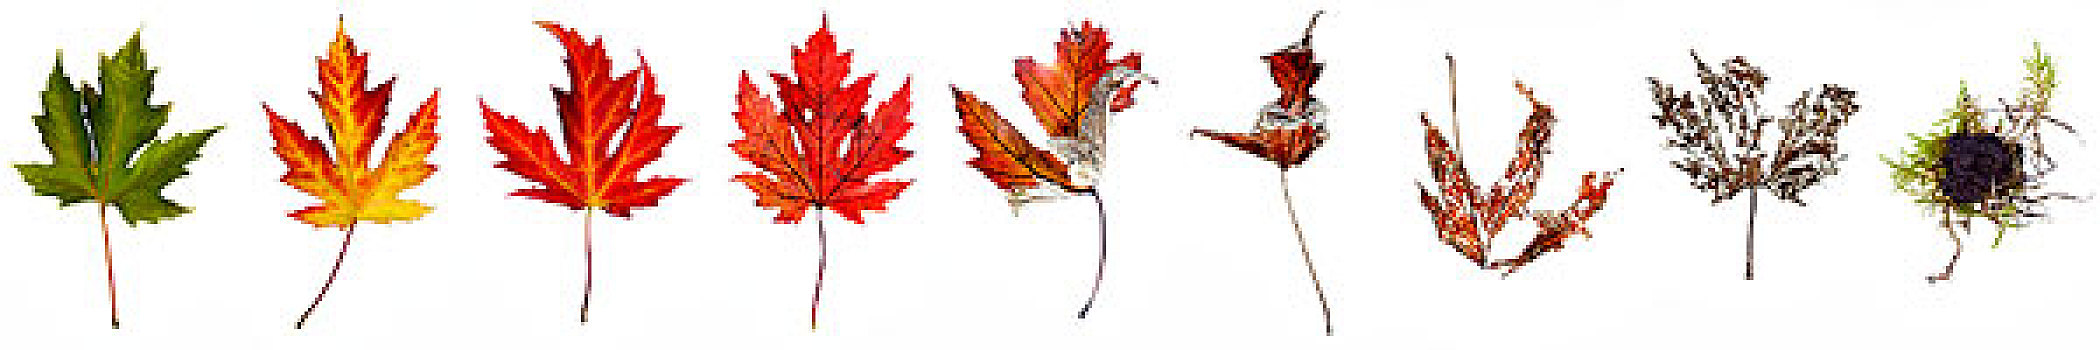 枫树,叶子,秋天,不同,彩色,多样,腐化